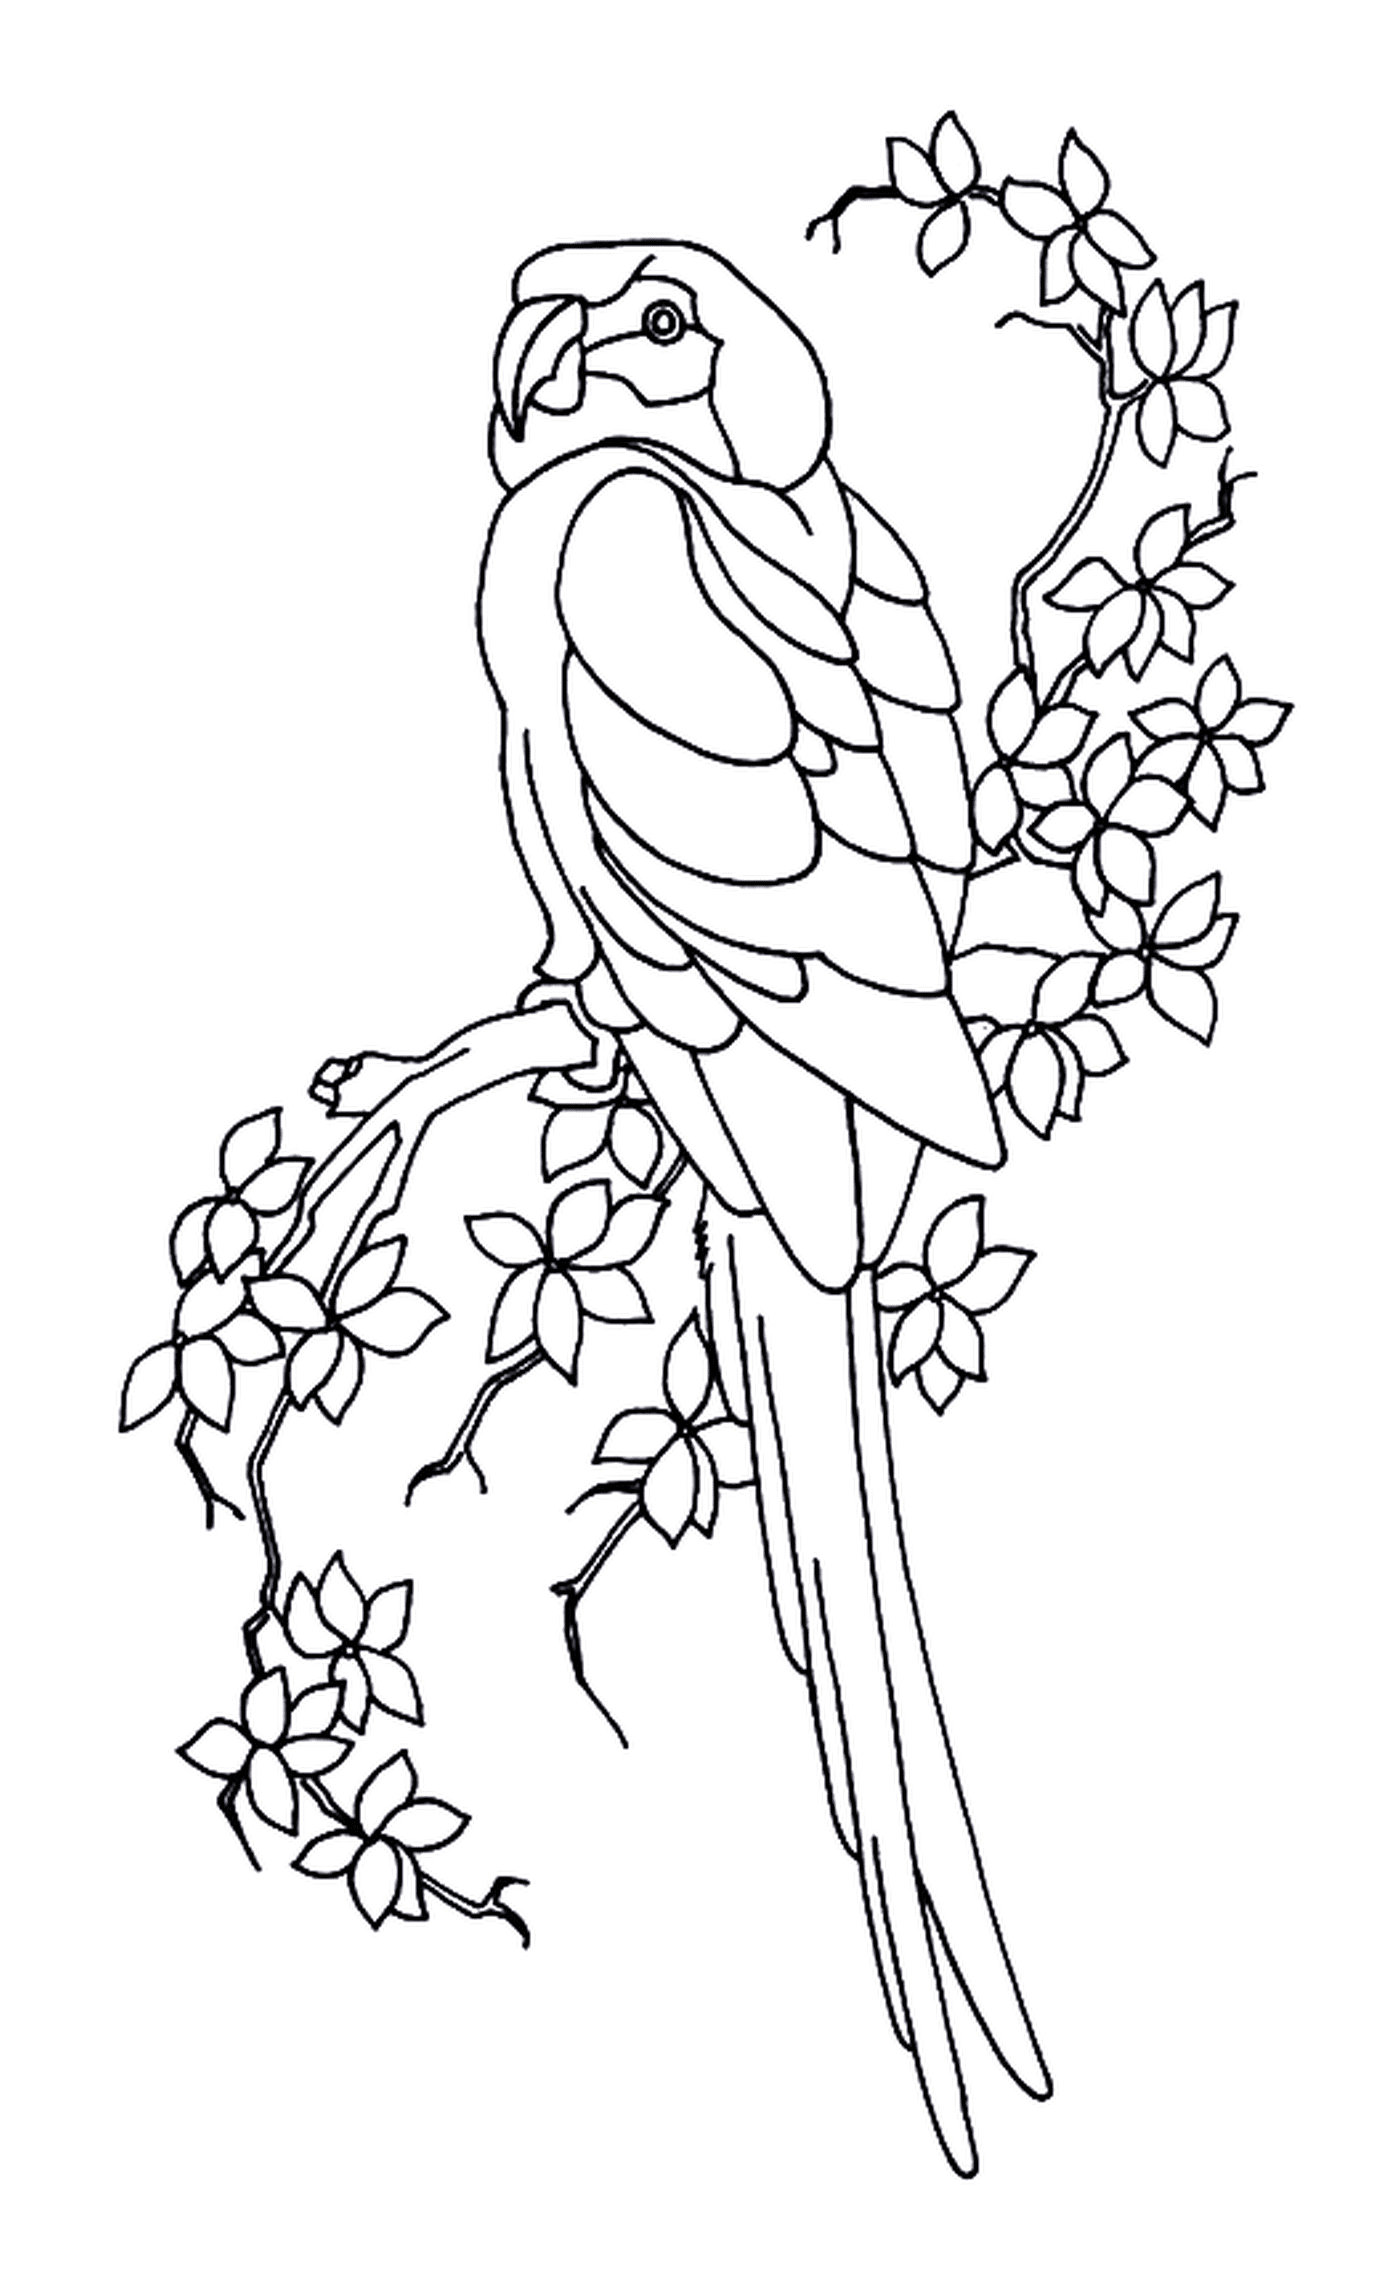  Perrot e folhas, pássaro empoleirado em um galho de árvore 